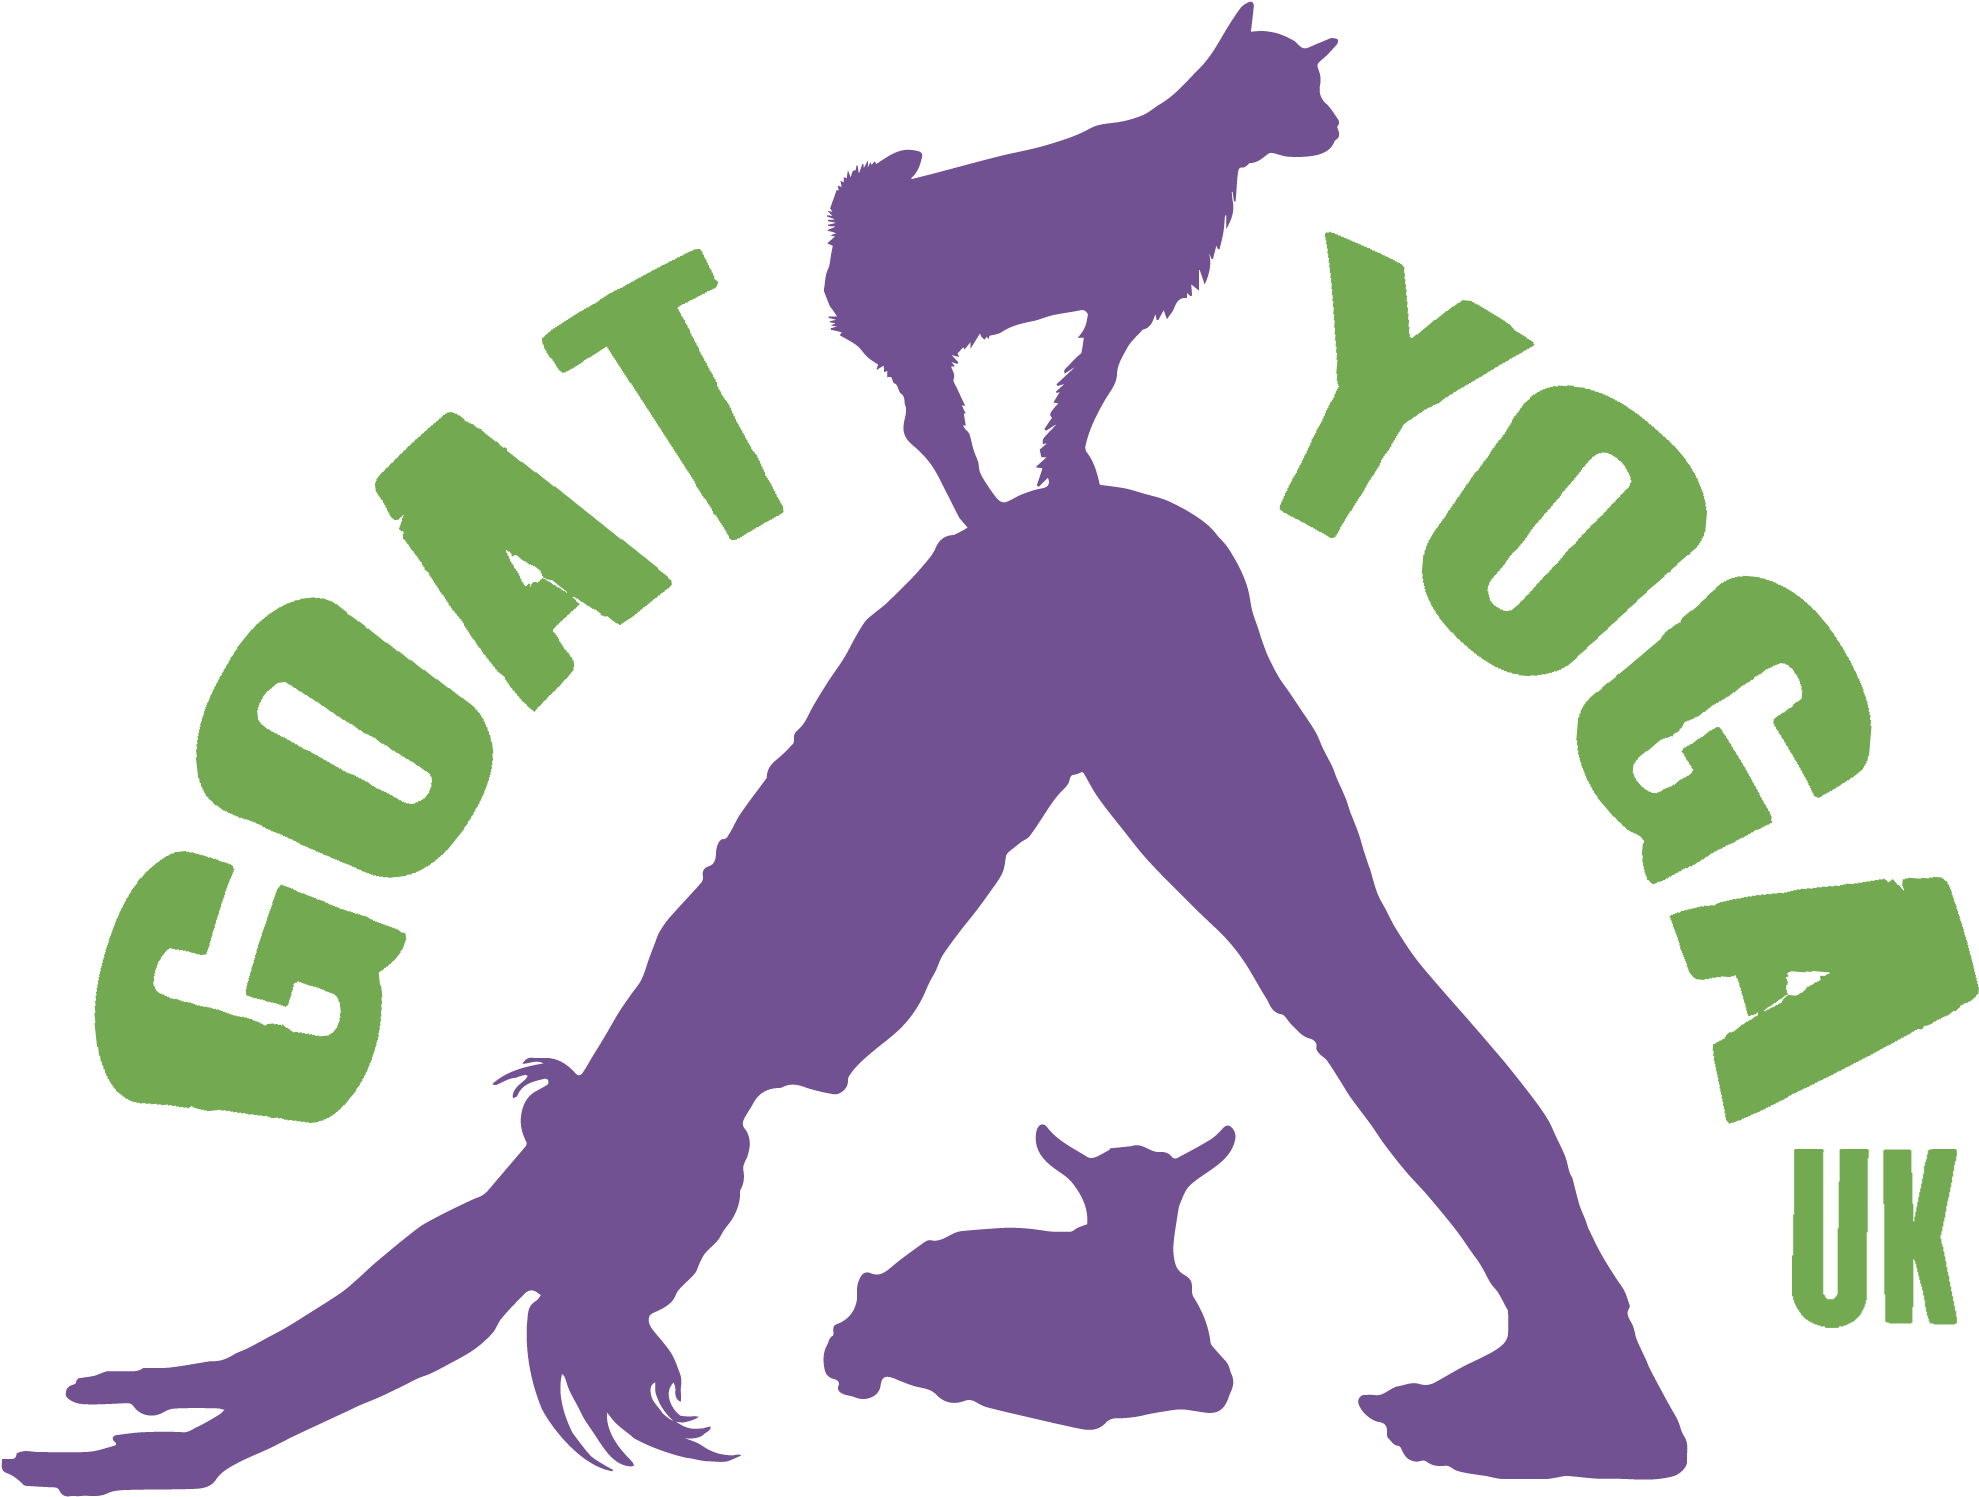 Goat Yoga Uk - Culture (2170x1614)